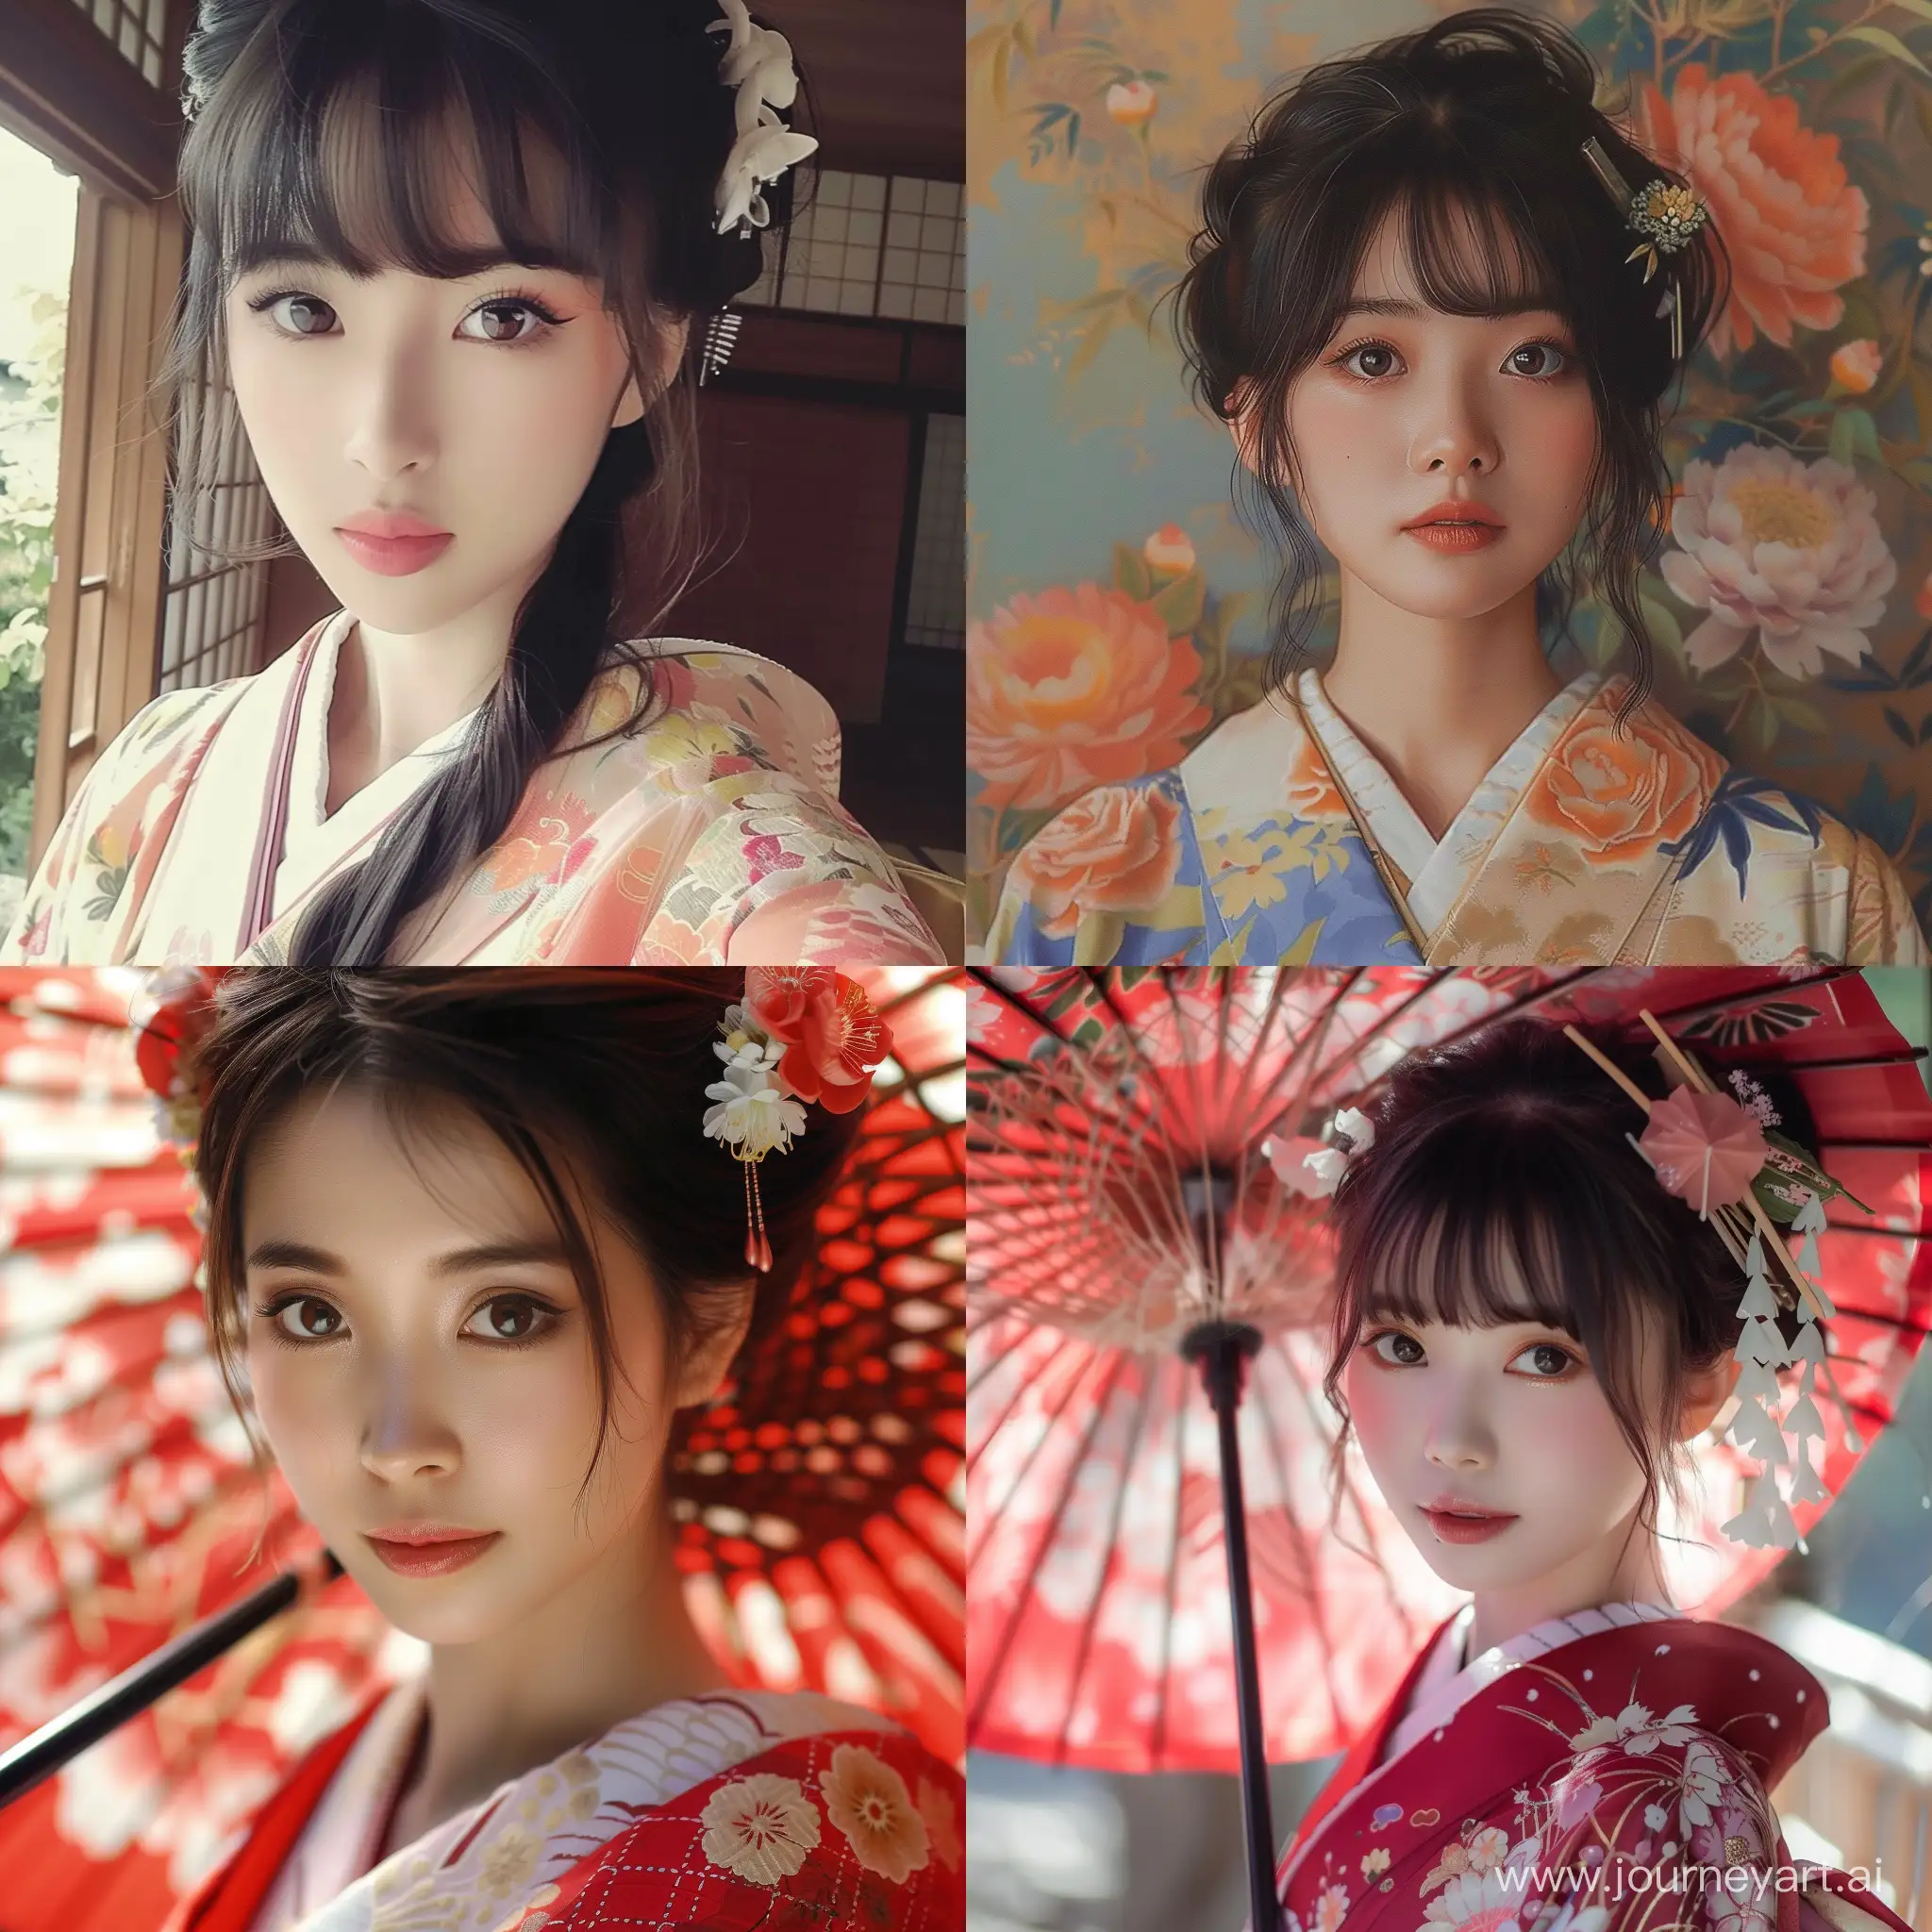 Very beautiful Japanese girls